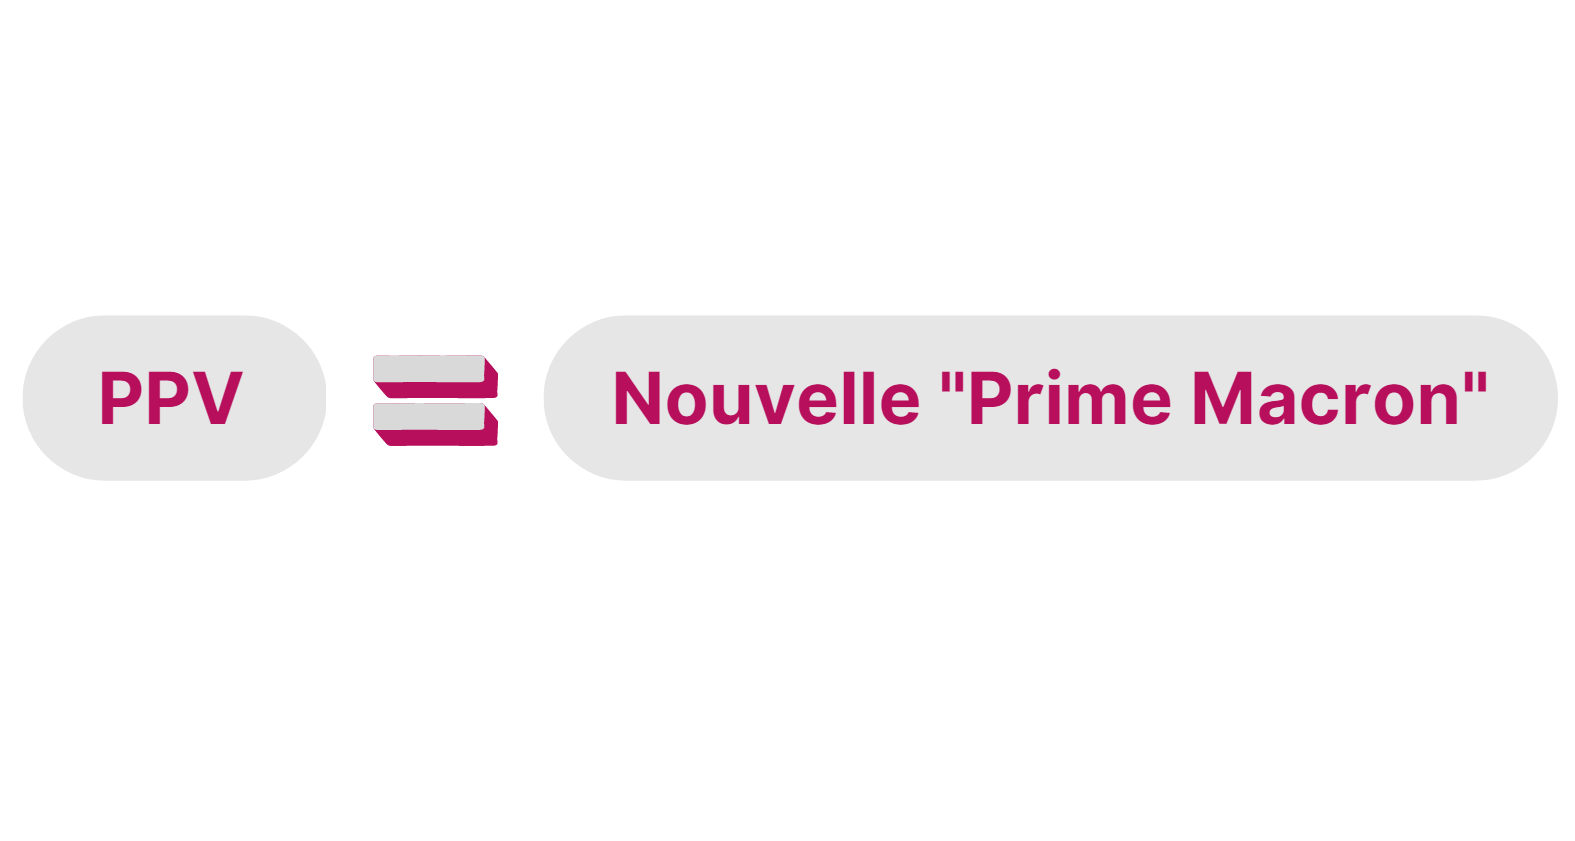 PPV_Prime_Macron